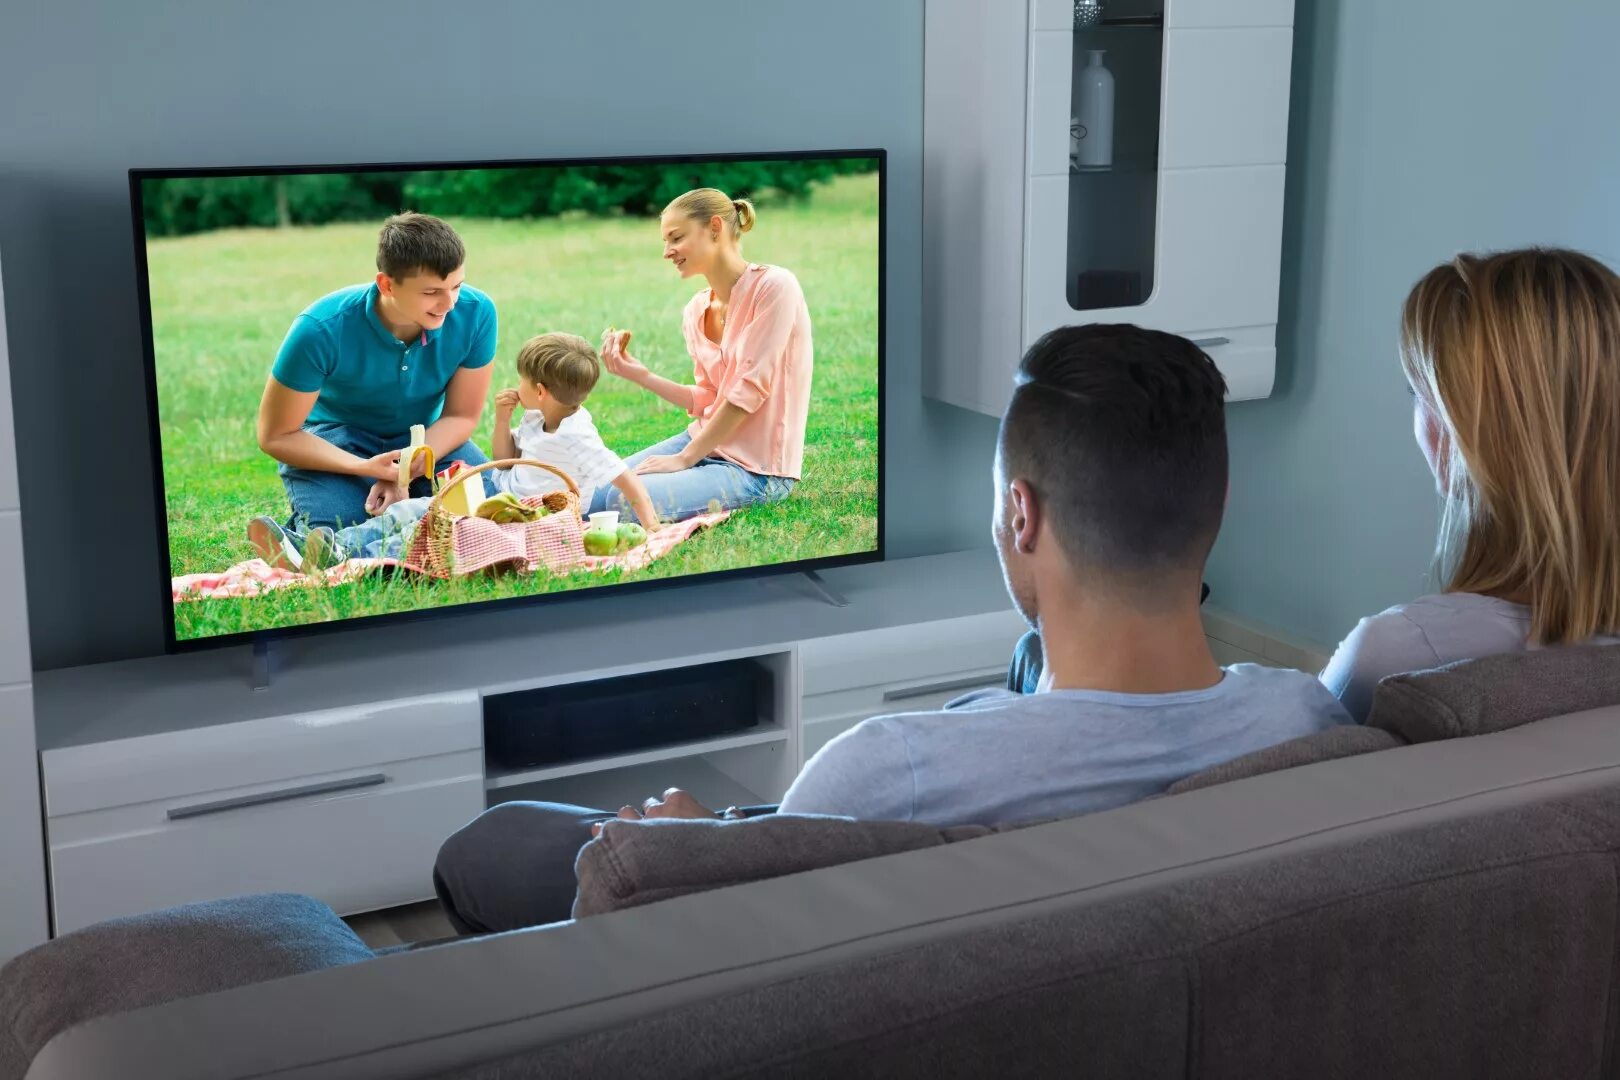 Громко смотрит телевизор. Семья у телевизора. Человек перед экраном. Человек рекламирующий телевизор. Телевизор с фильмом.